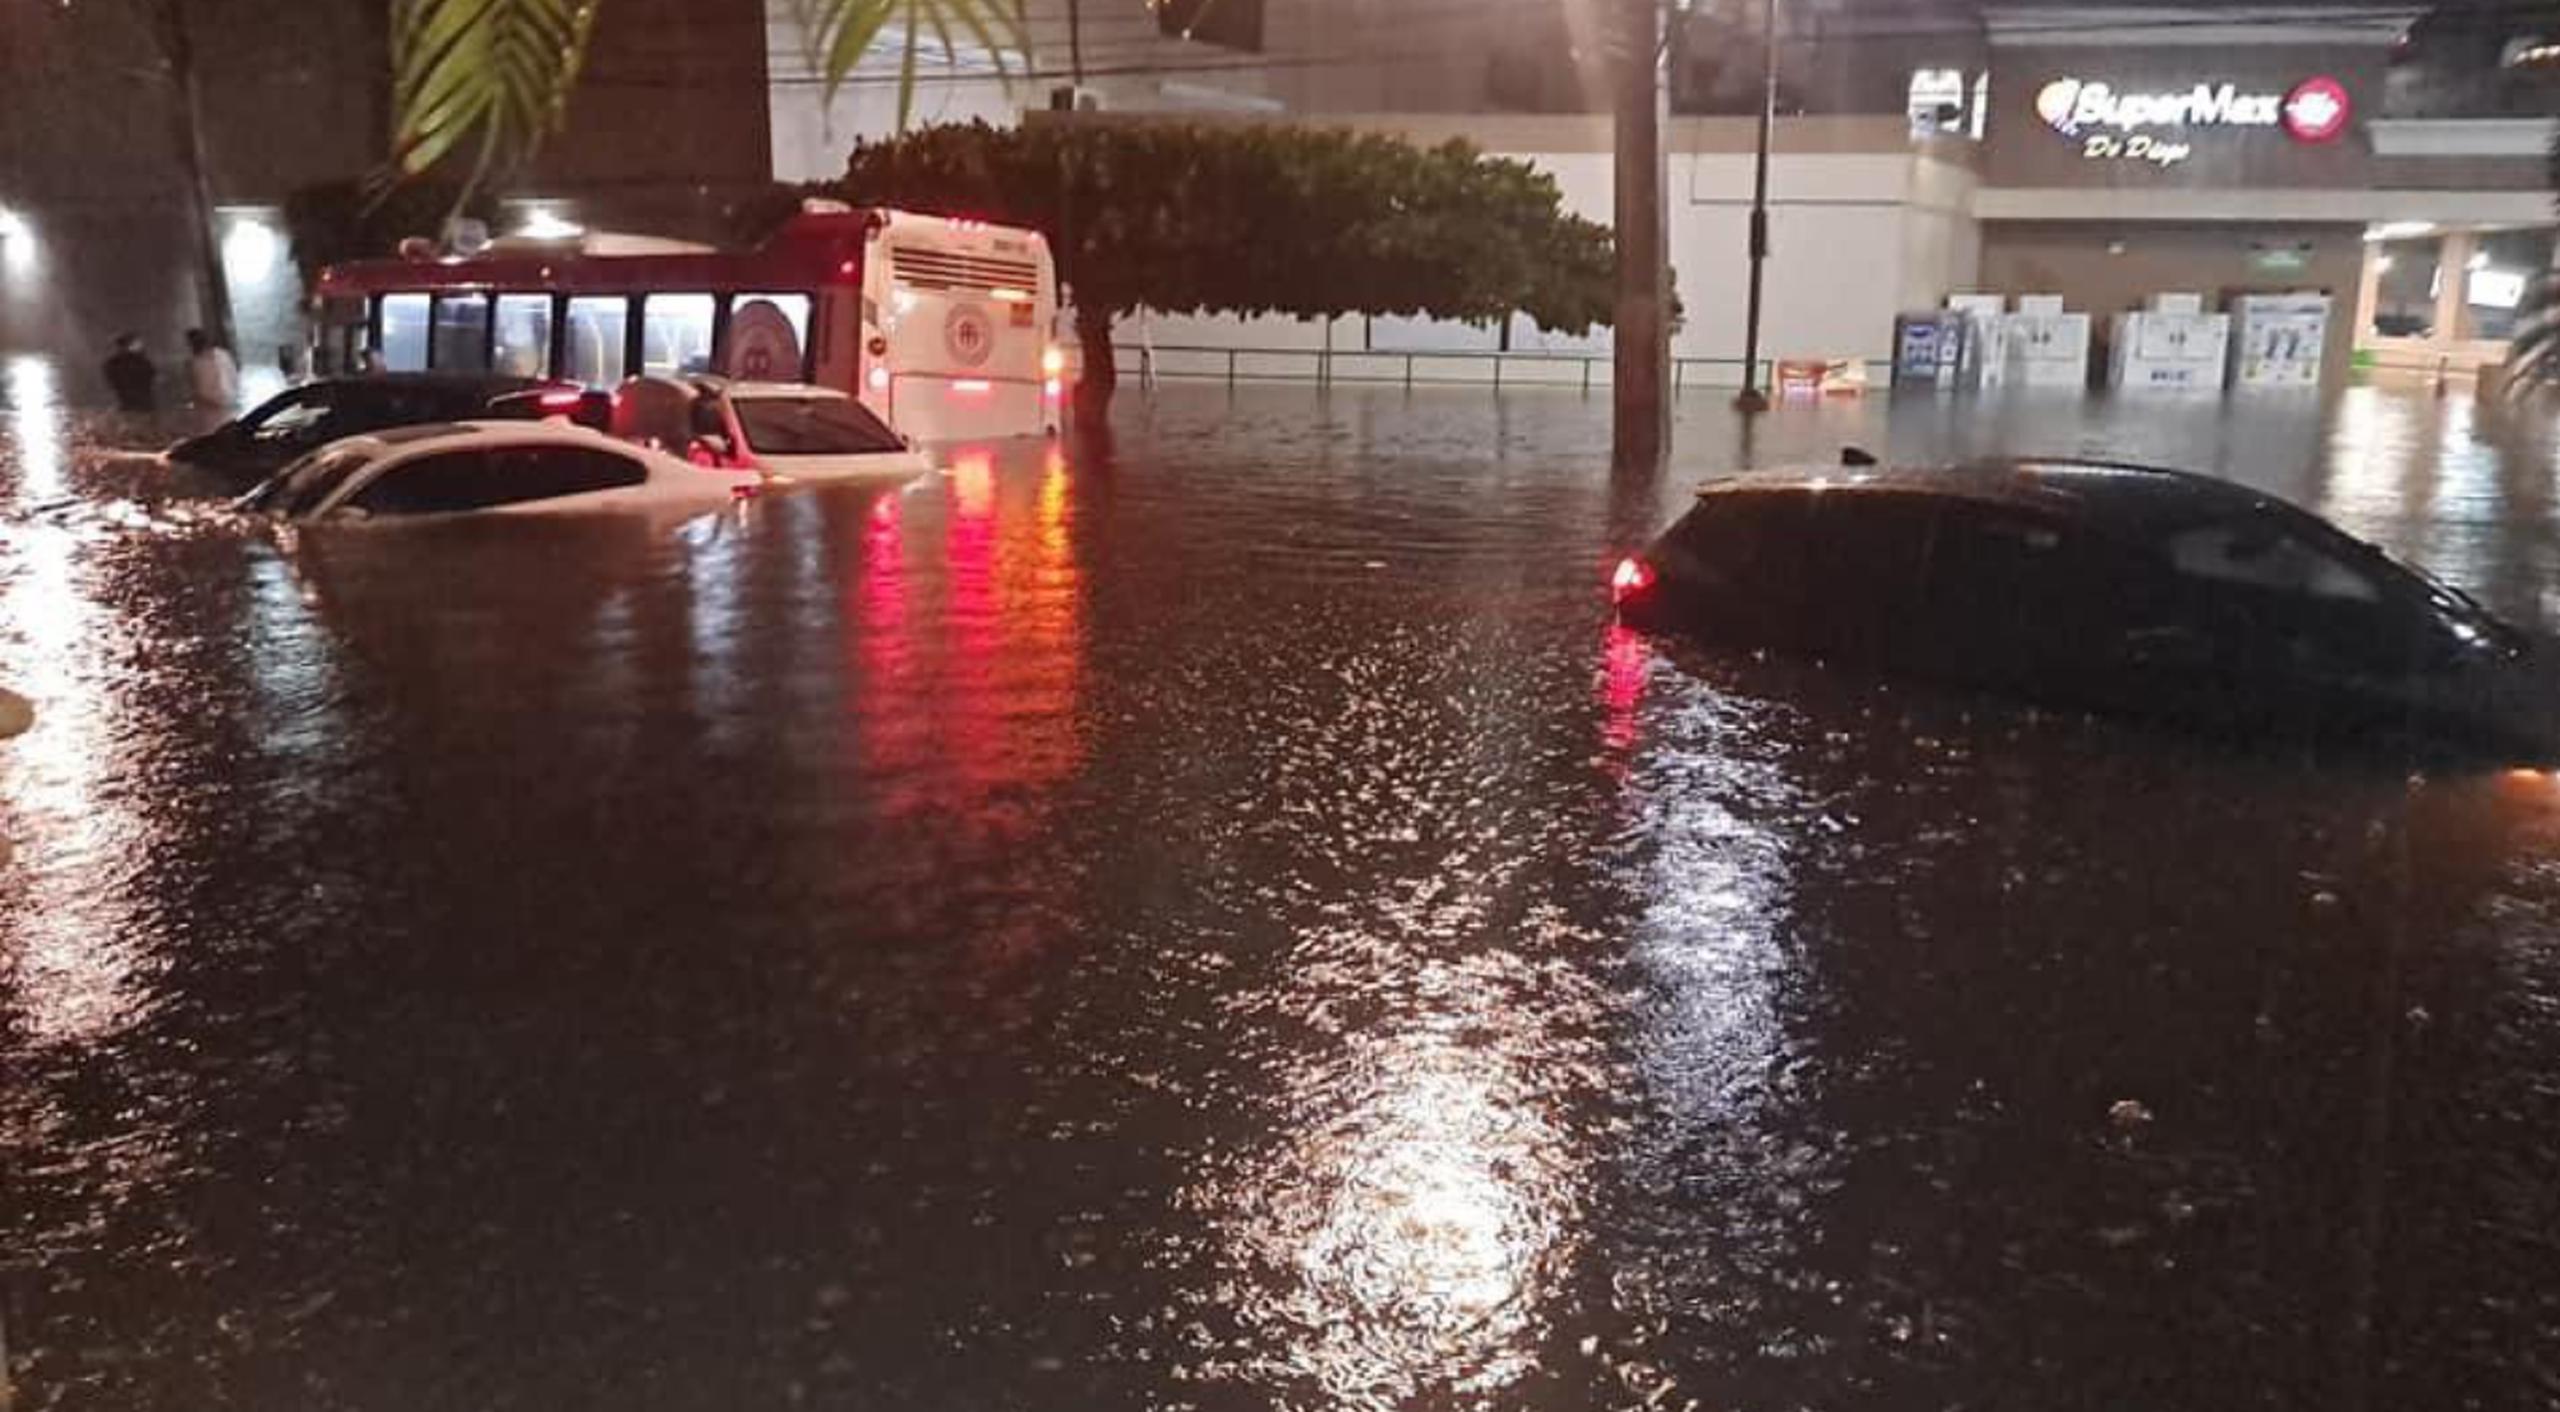 Las lluvias torrenciales del pasado viernes 27 de octubre provocaron inundaciones por doquier en San Juan, Guaynabo y Loíza.